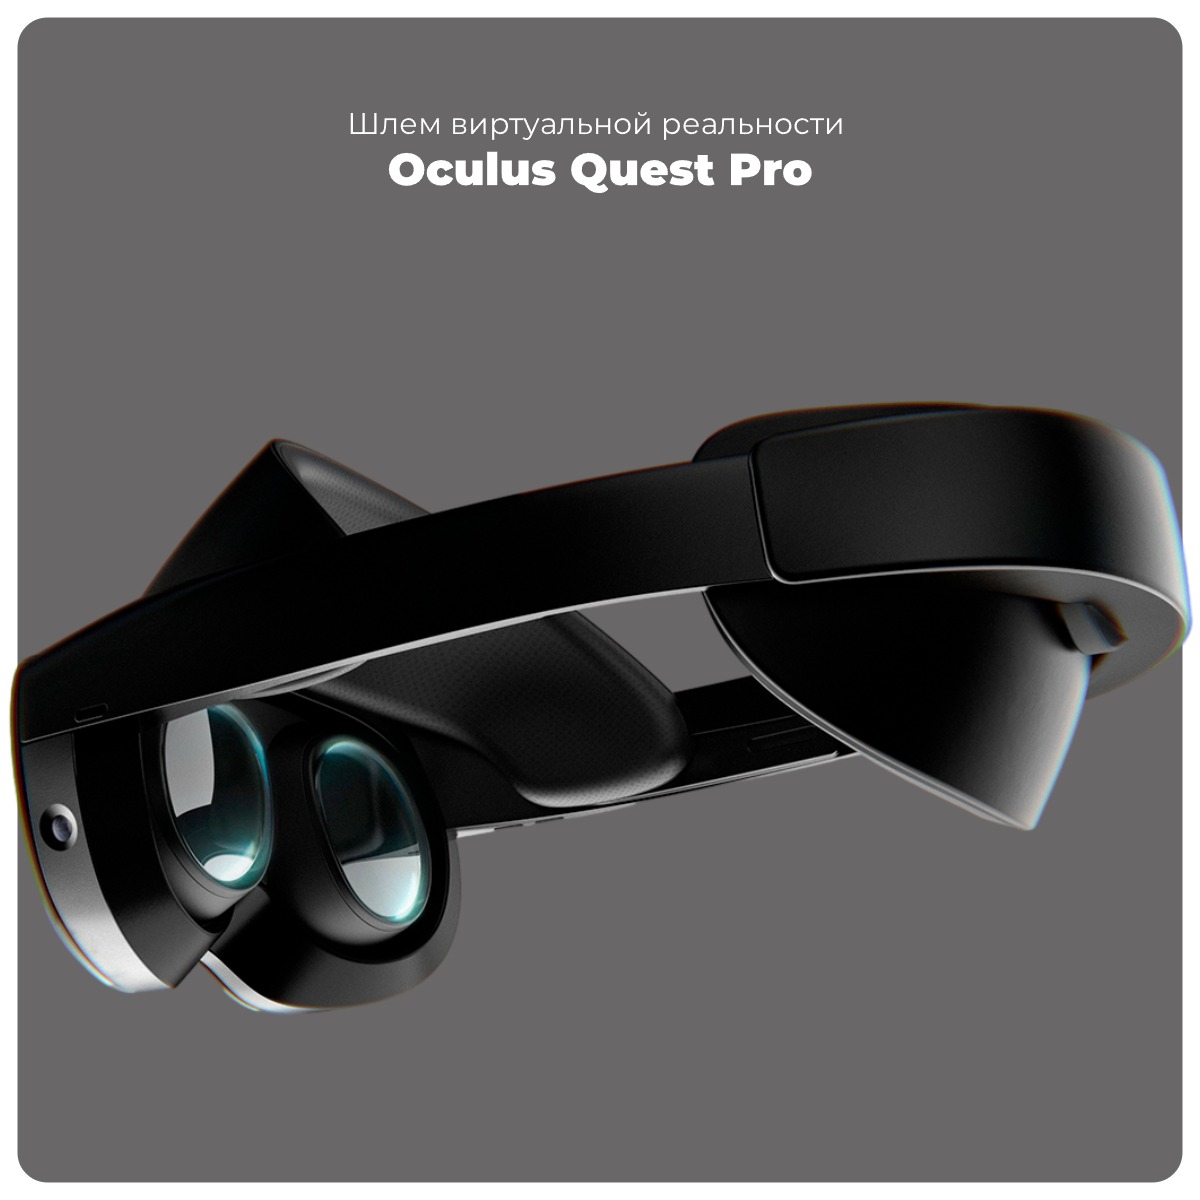 Oculus-Quest-Pro-01